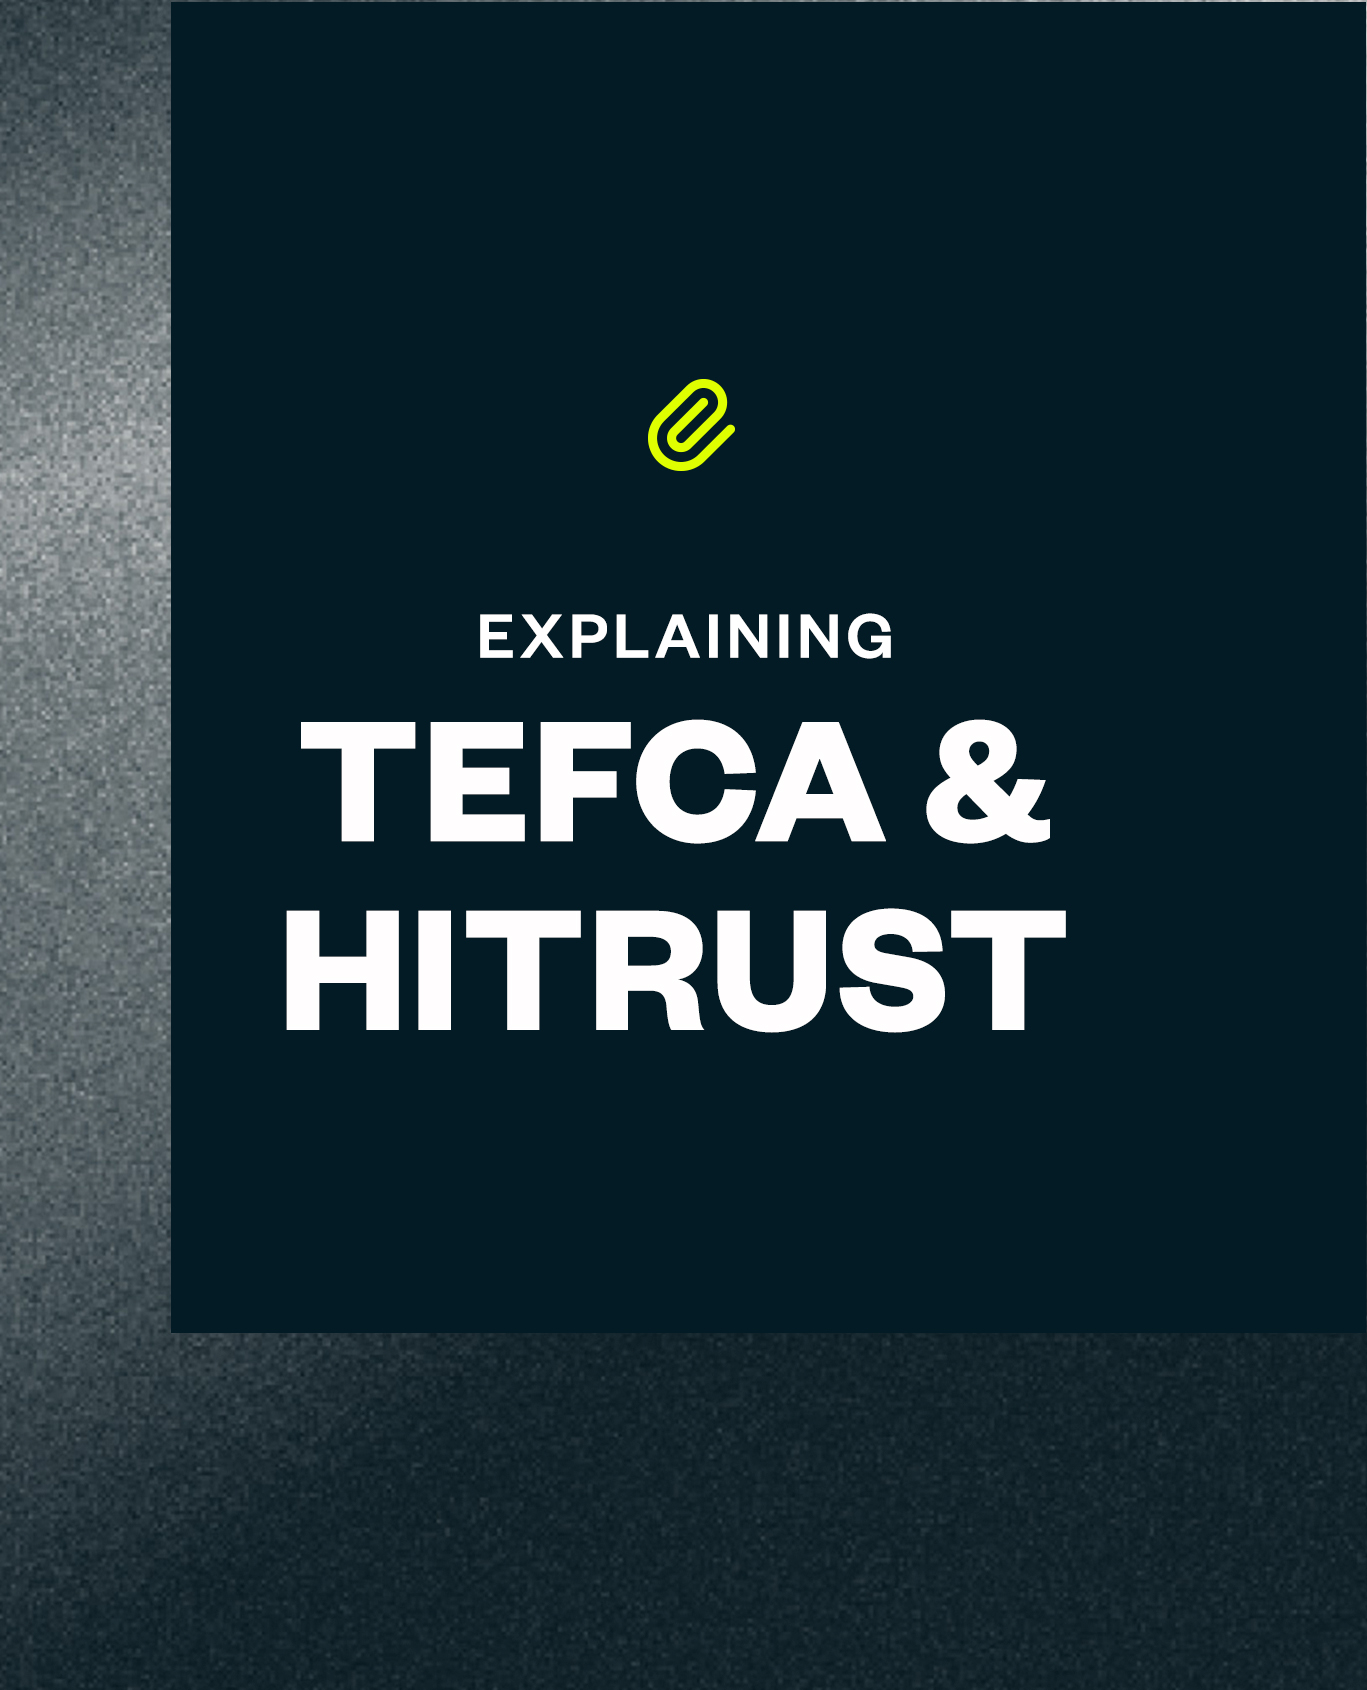 article TEFCA & HITRUST 1 0